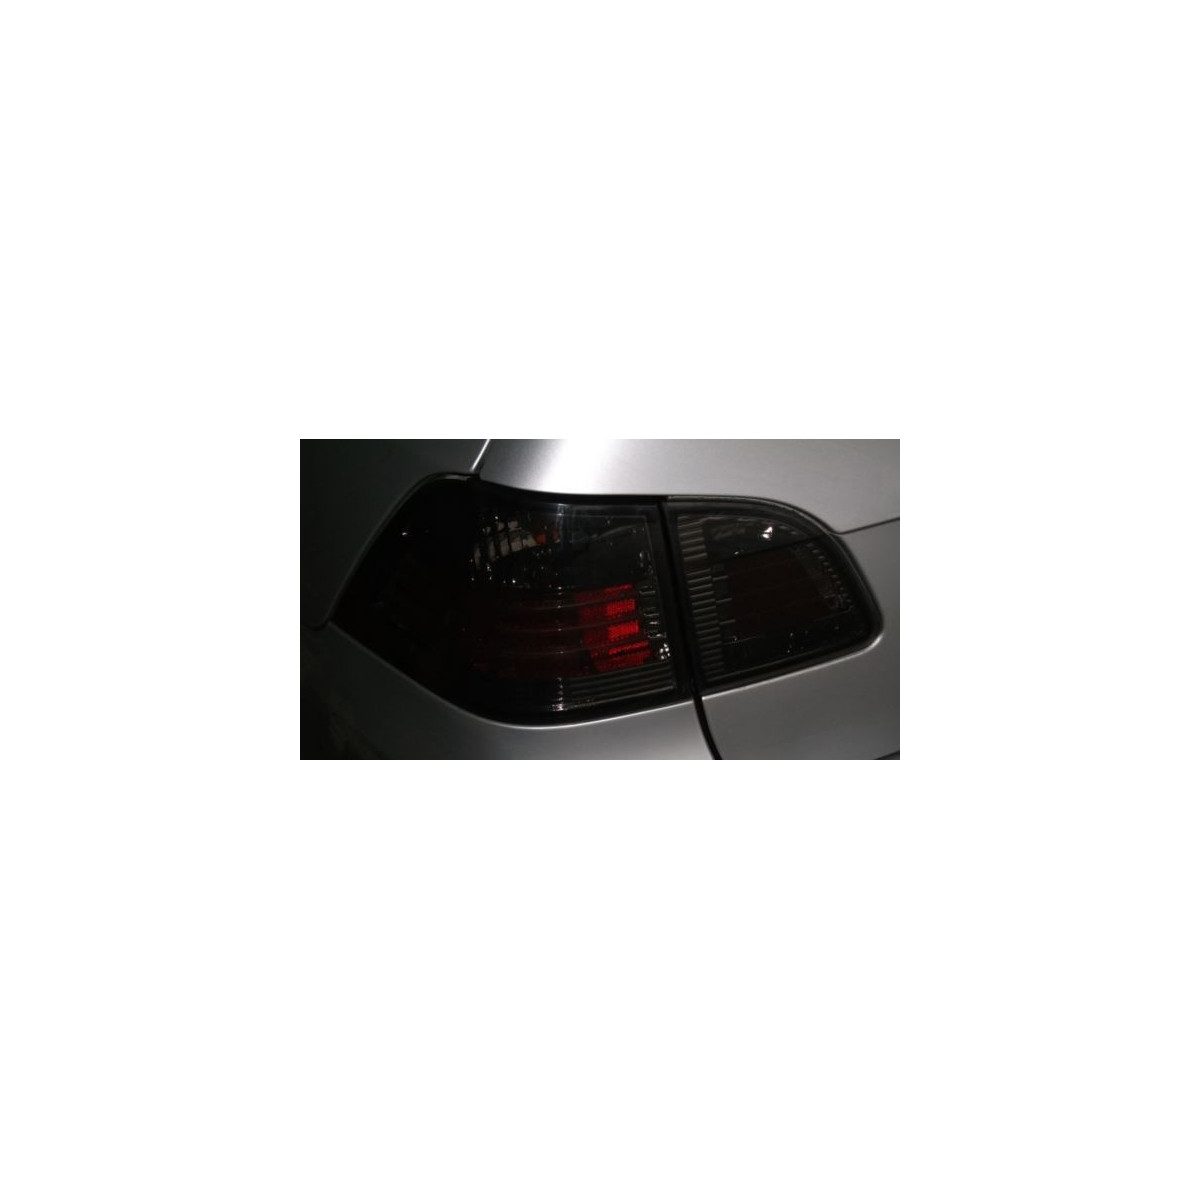 LAMPY TYLNE LED BMW E61 SMOKE TOURING 6/04-3/07